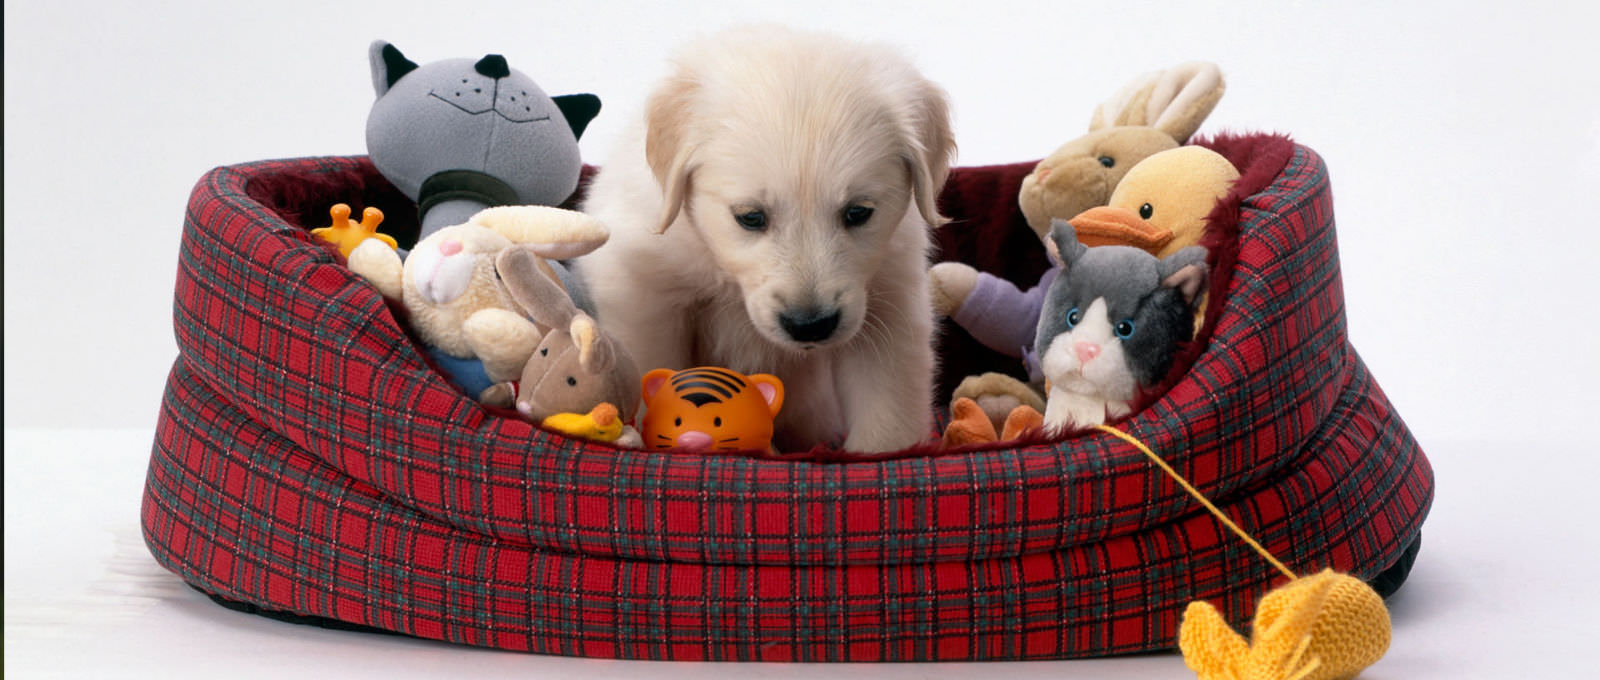 Giochi e giocattoli per cani - come scegliere quello giusto per il vostro cane